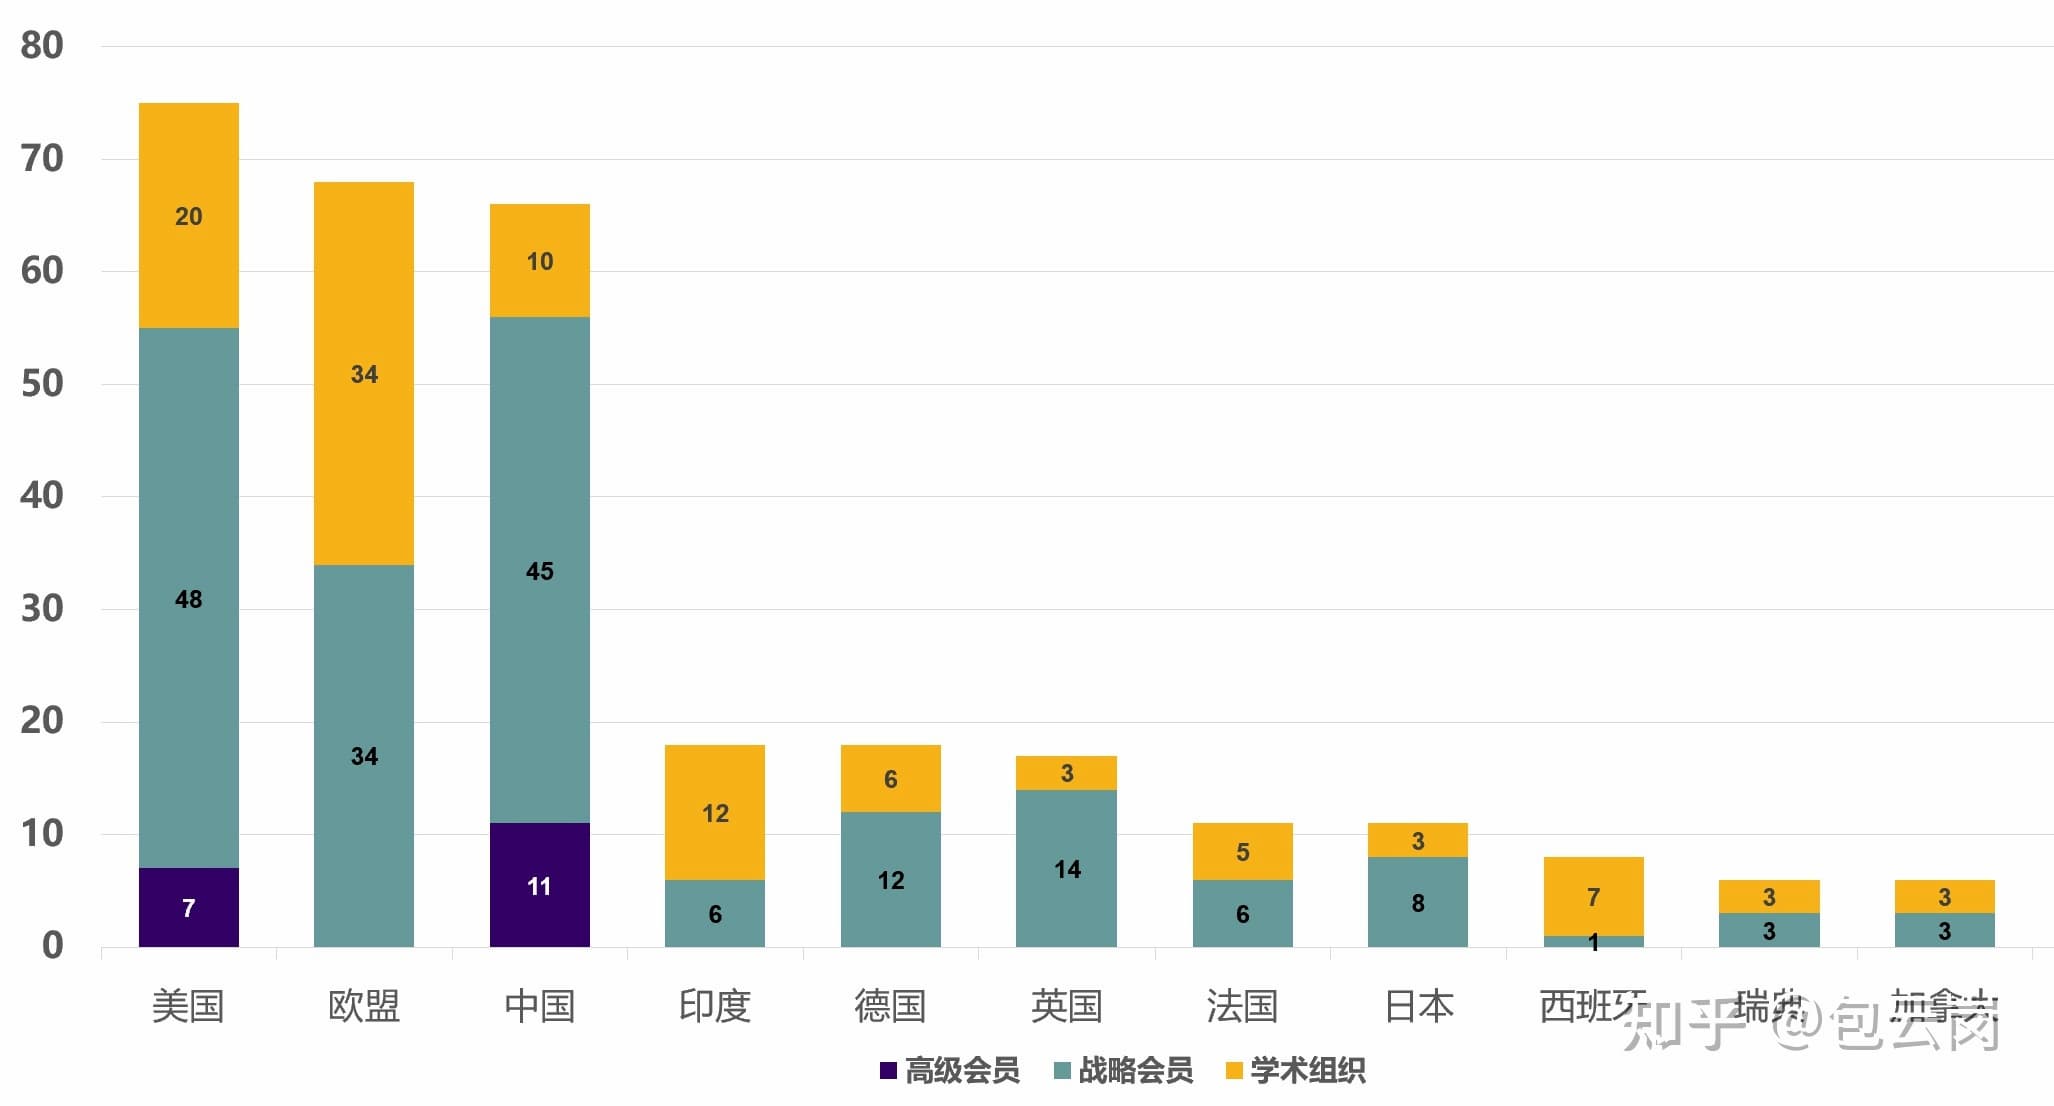 国別のRISC-Vの会員数。濃い青がプレミアム怪異を示し中国が一番多い。Bao Yungang（包云岗）の知呼より。https://www.zhihu.com/question/537501900/answer/2536052245